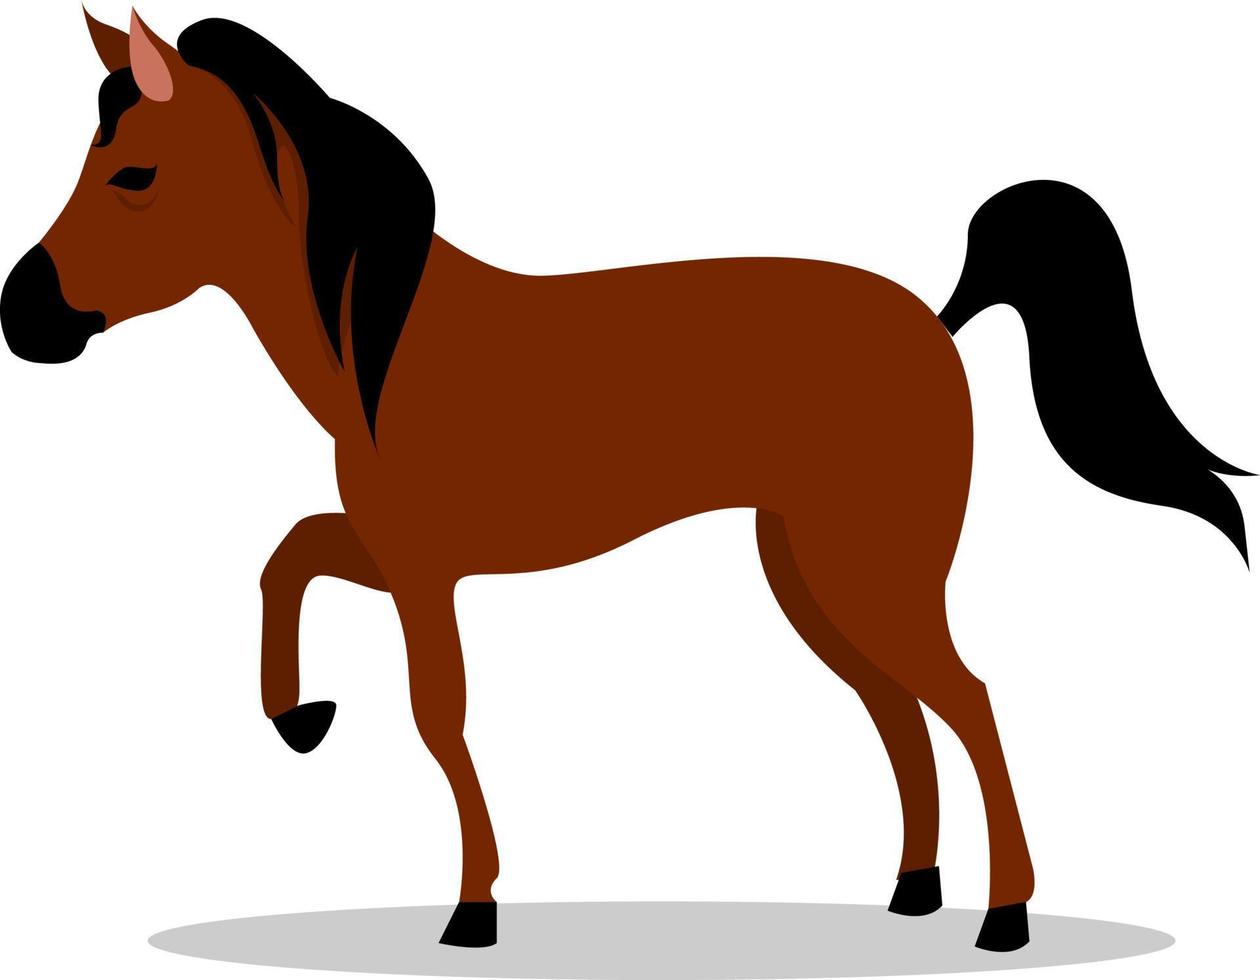 cavalo marrom, ilustração, vetor em fundo branco.